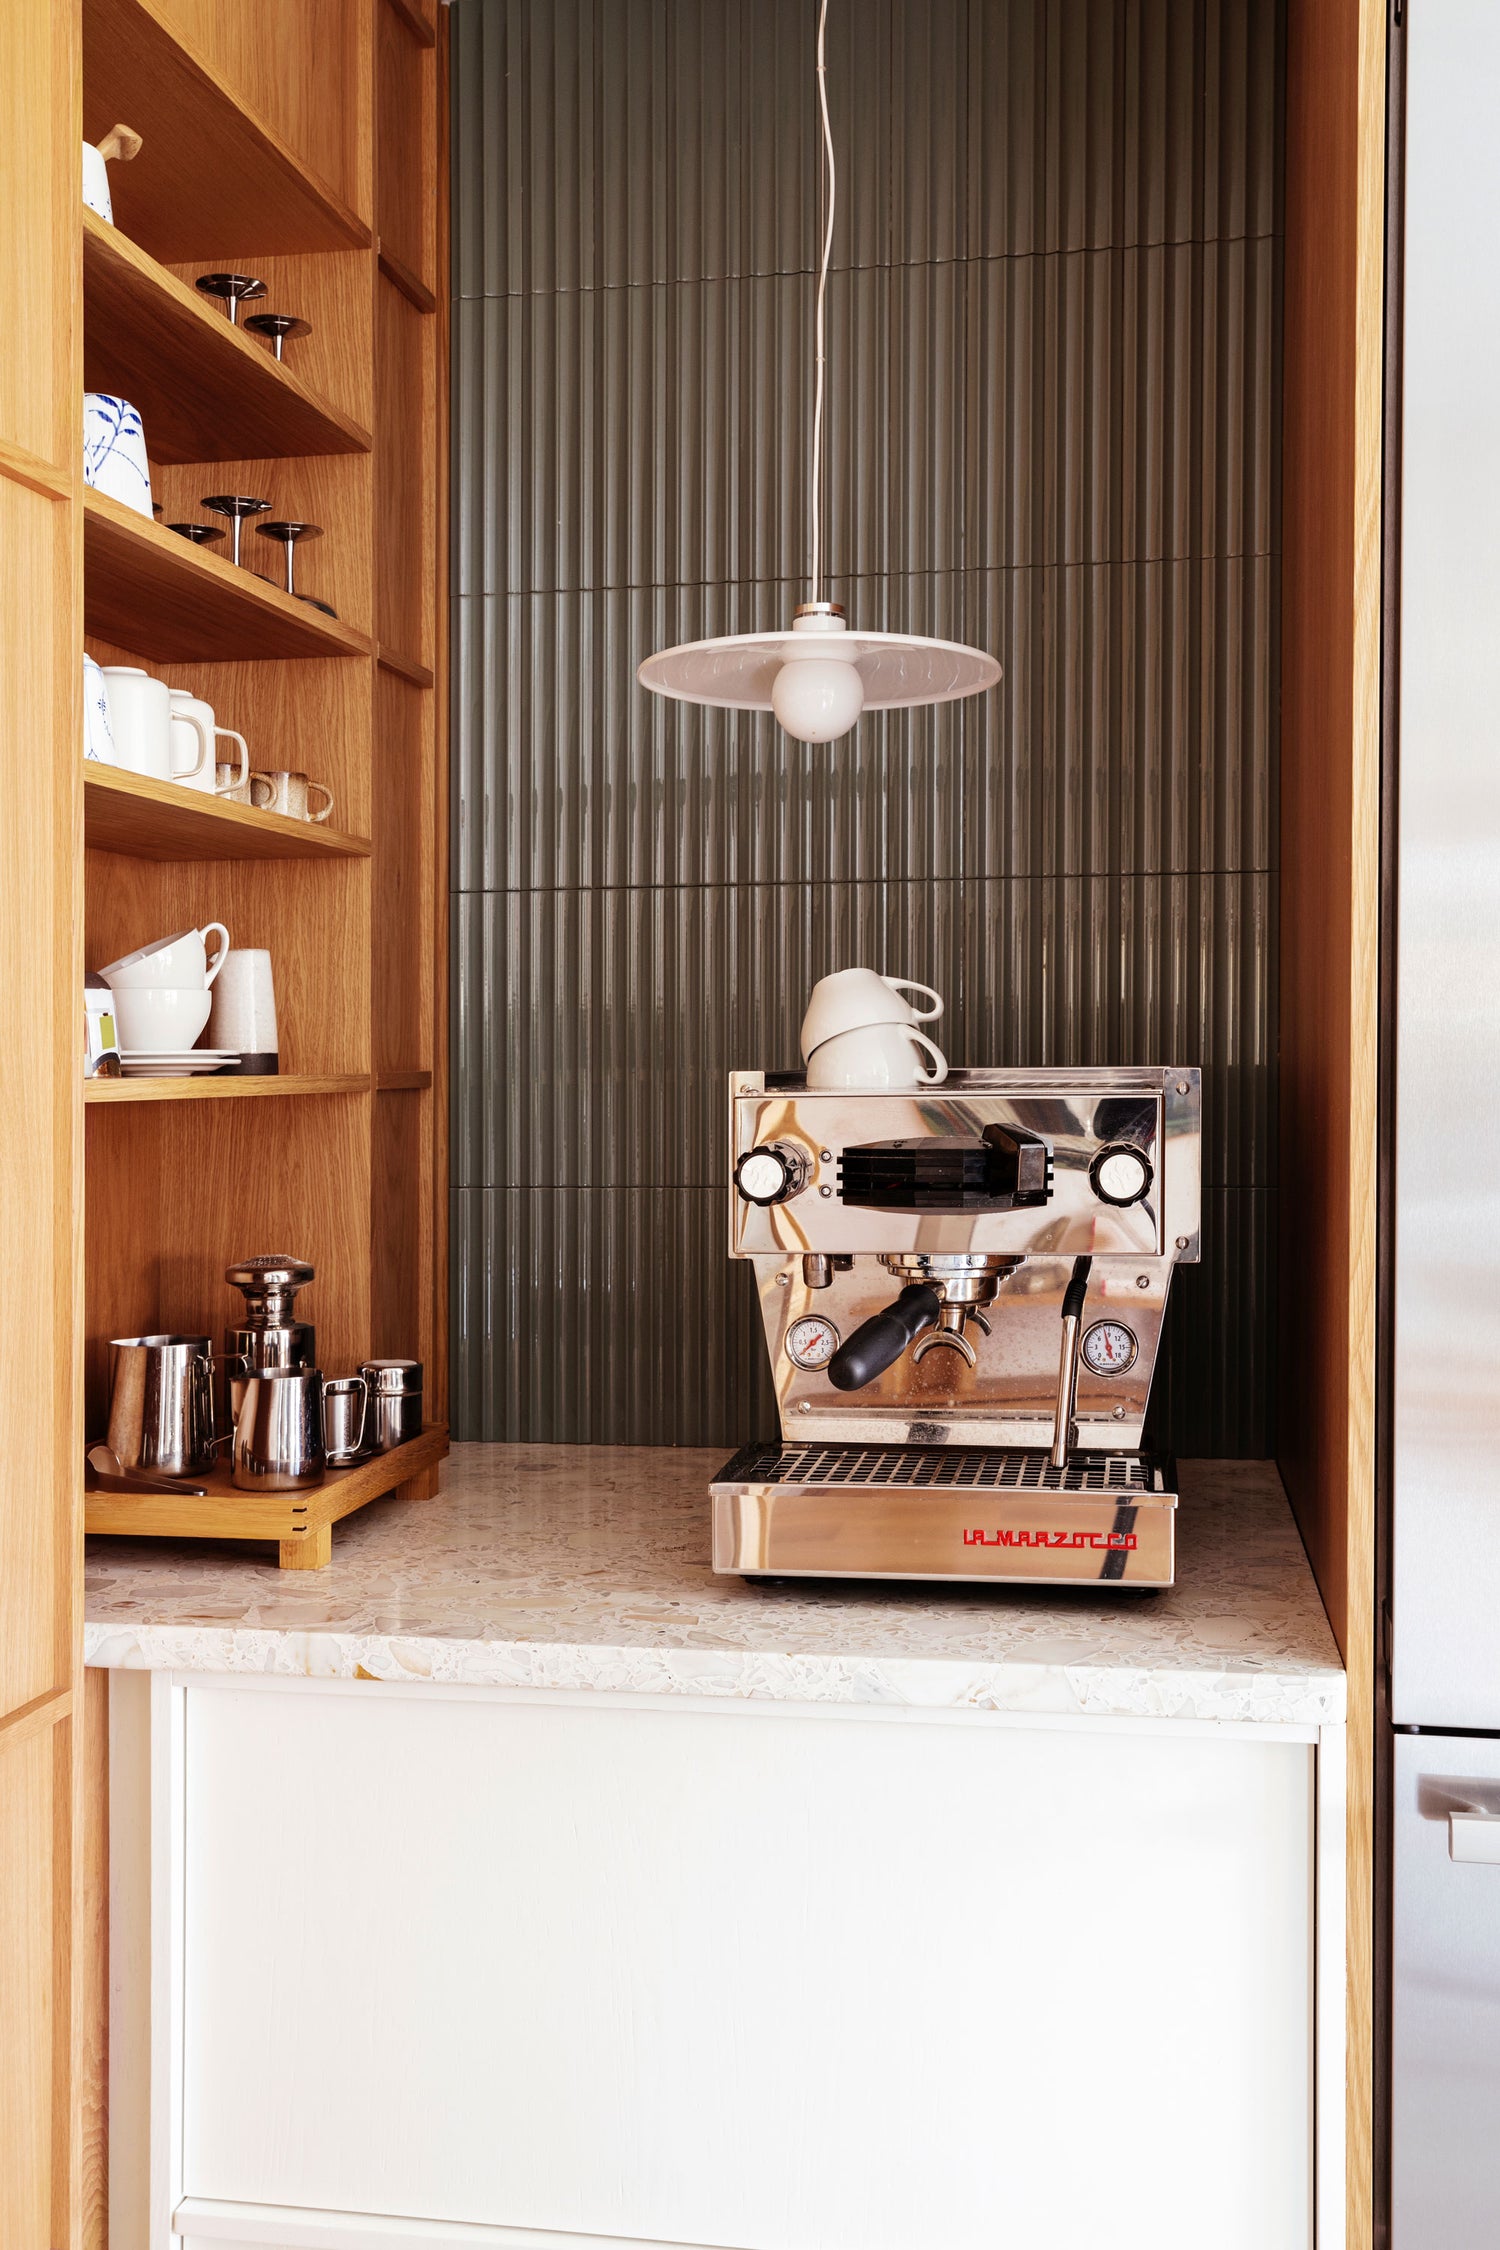 På kjøkkenet finnes det en egen kaffekrok med en kaffemaskin i blankt stål fra La Marzocco. Dette gir familien en følelse av hverdagsluksus.